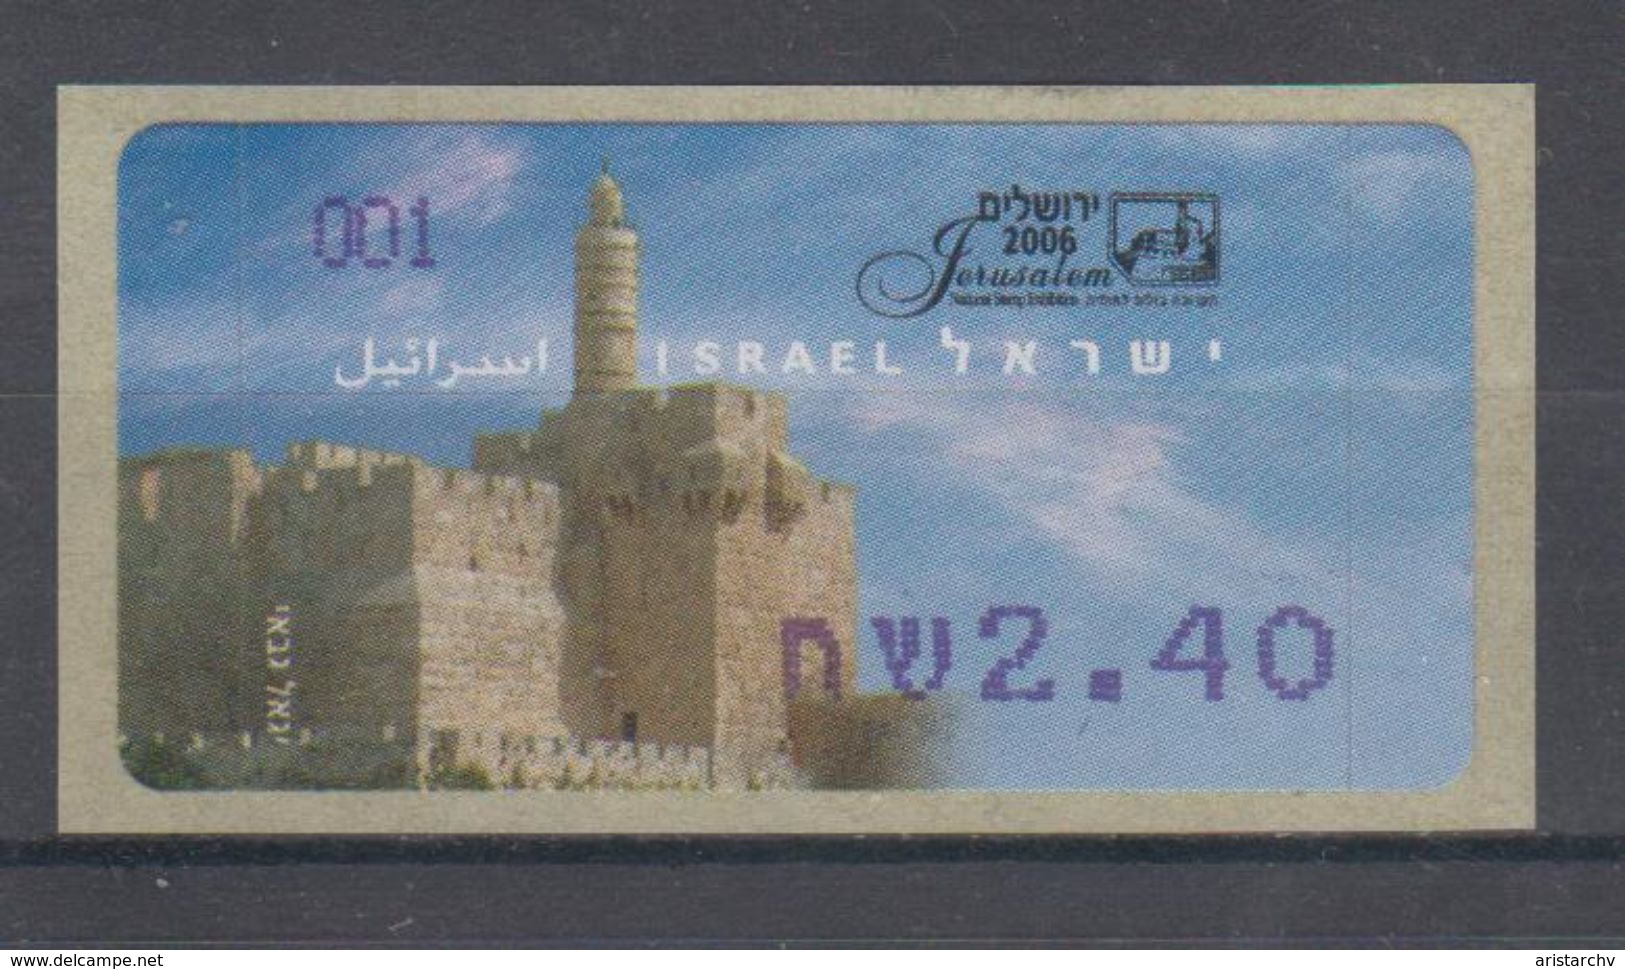 ISRAEL 2006 ATM KLUSSENDORF JERUSALEM NATIONAL STAMP EXHIBITION LIBERTY STATUE 2.40 SHEKELS - Vignettes D'affranchissement (Frama)